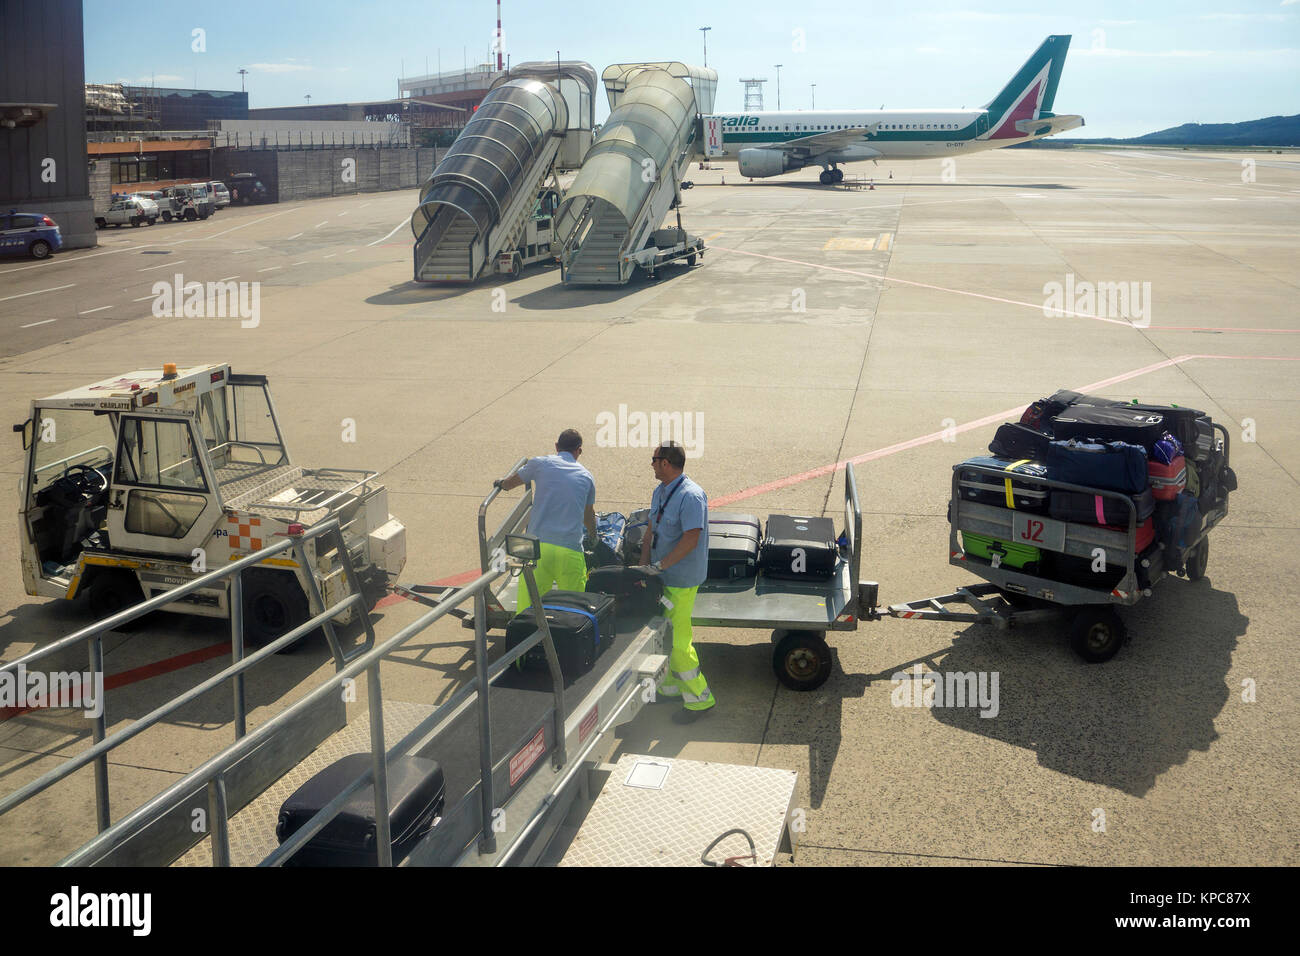 Flugzeug mit Gepäck beladen, Flughafen Alghero Fertilia, Sardinien, Italien, Mittelmeer, Europa Stockfoto